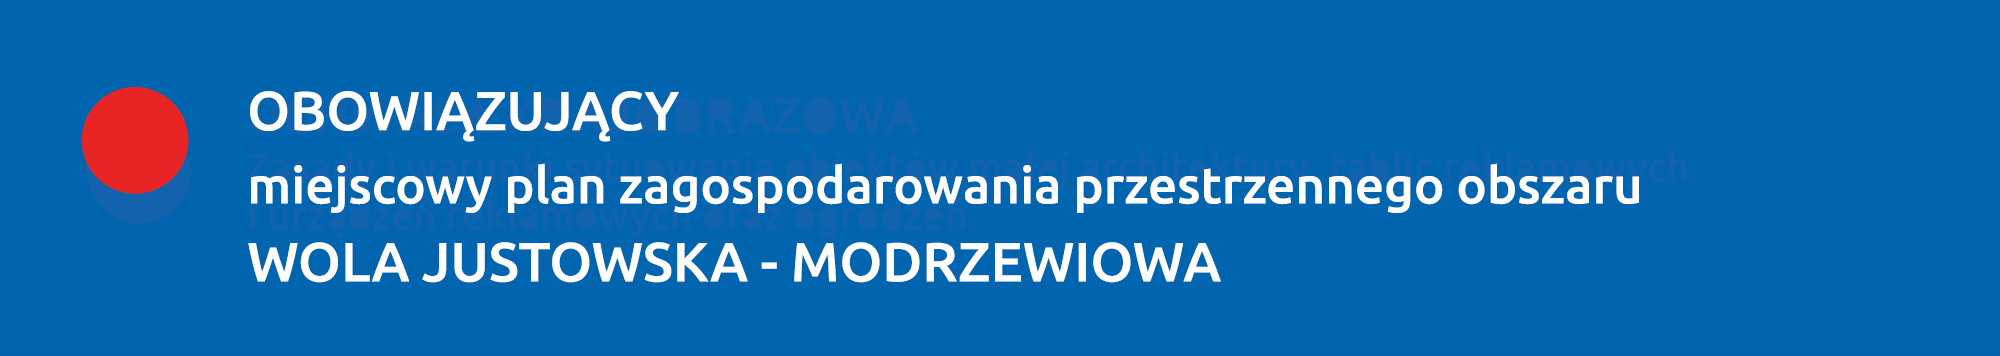 Obowiązujący plan WOLA JUSTOWSKA - MODRZEWIOWA